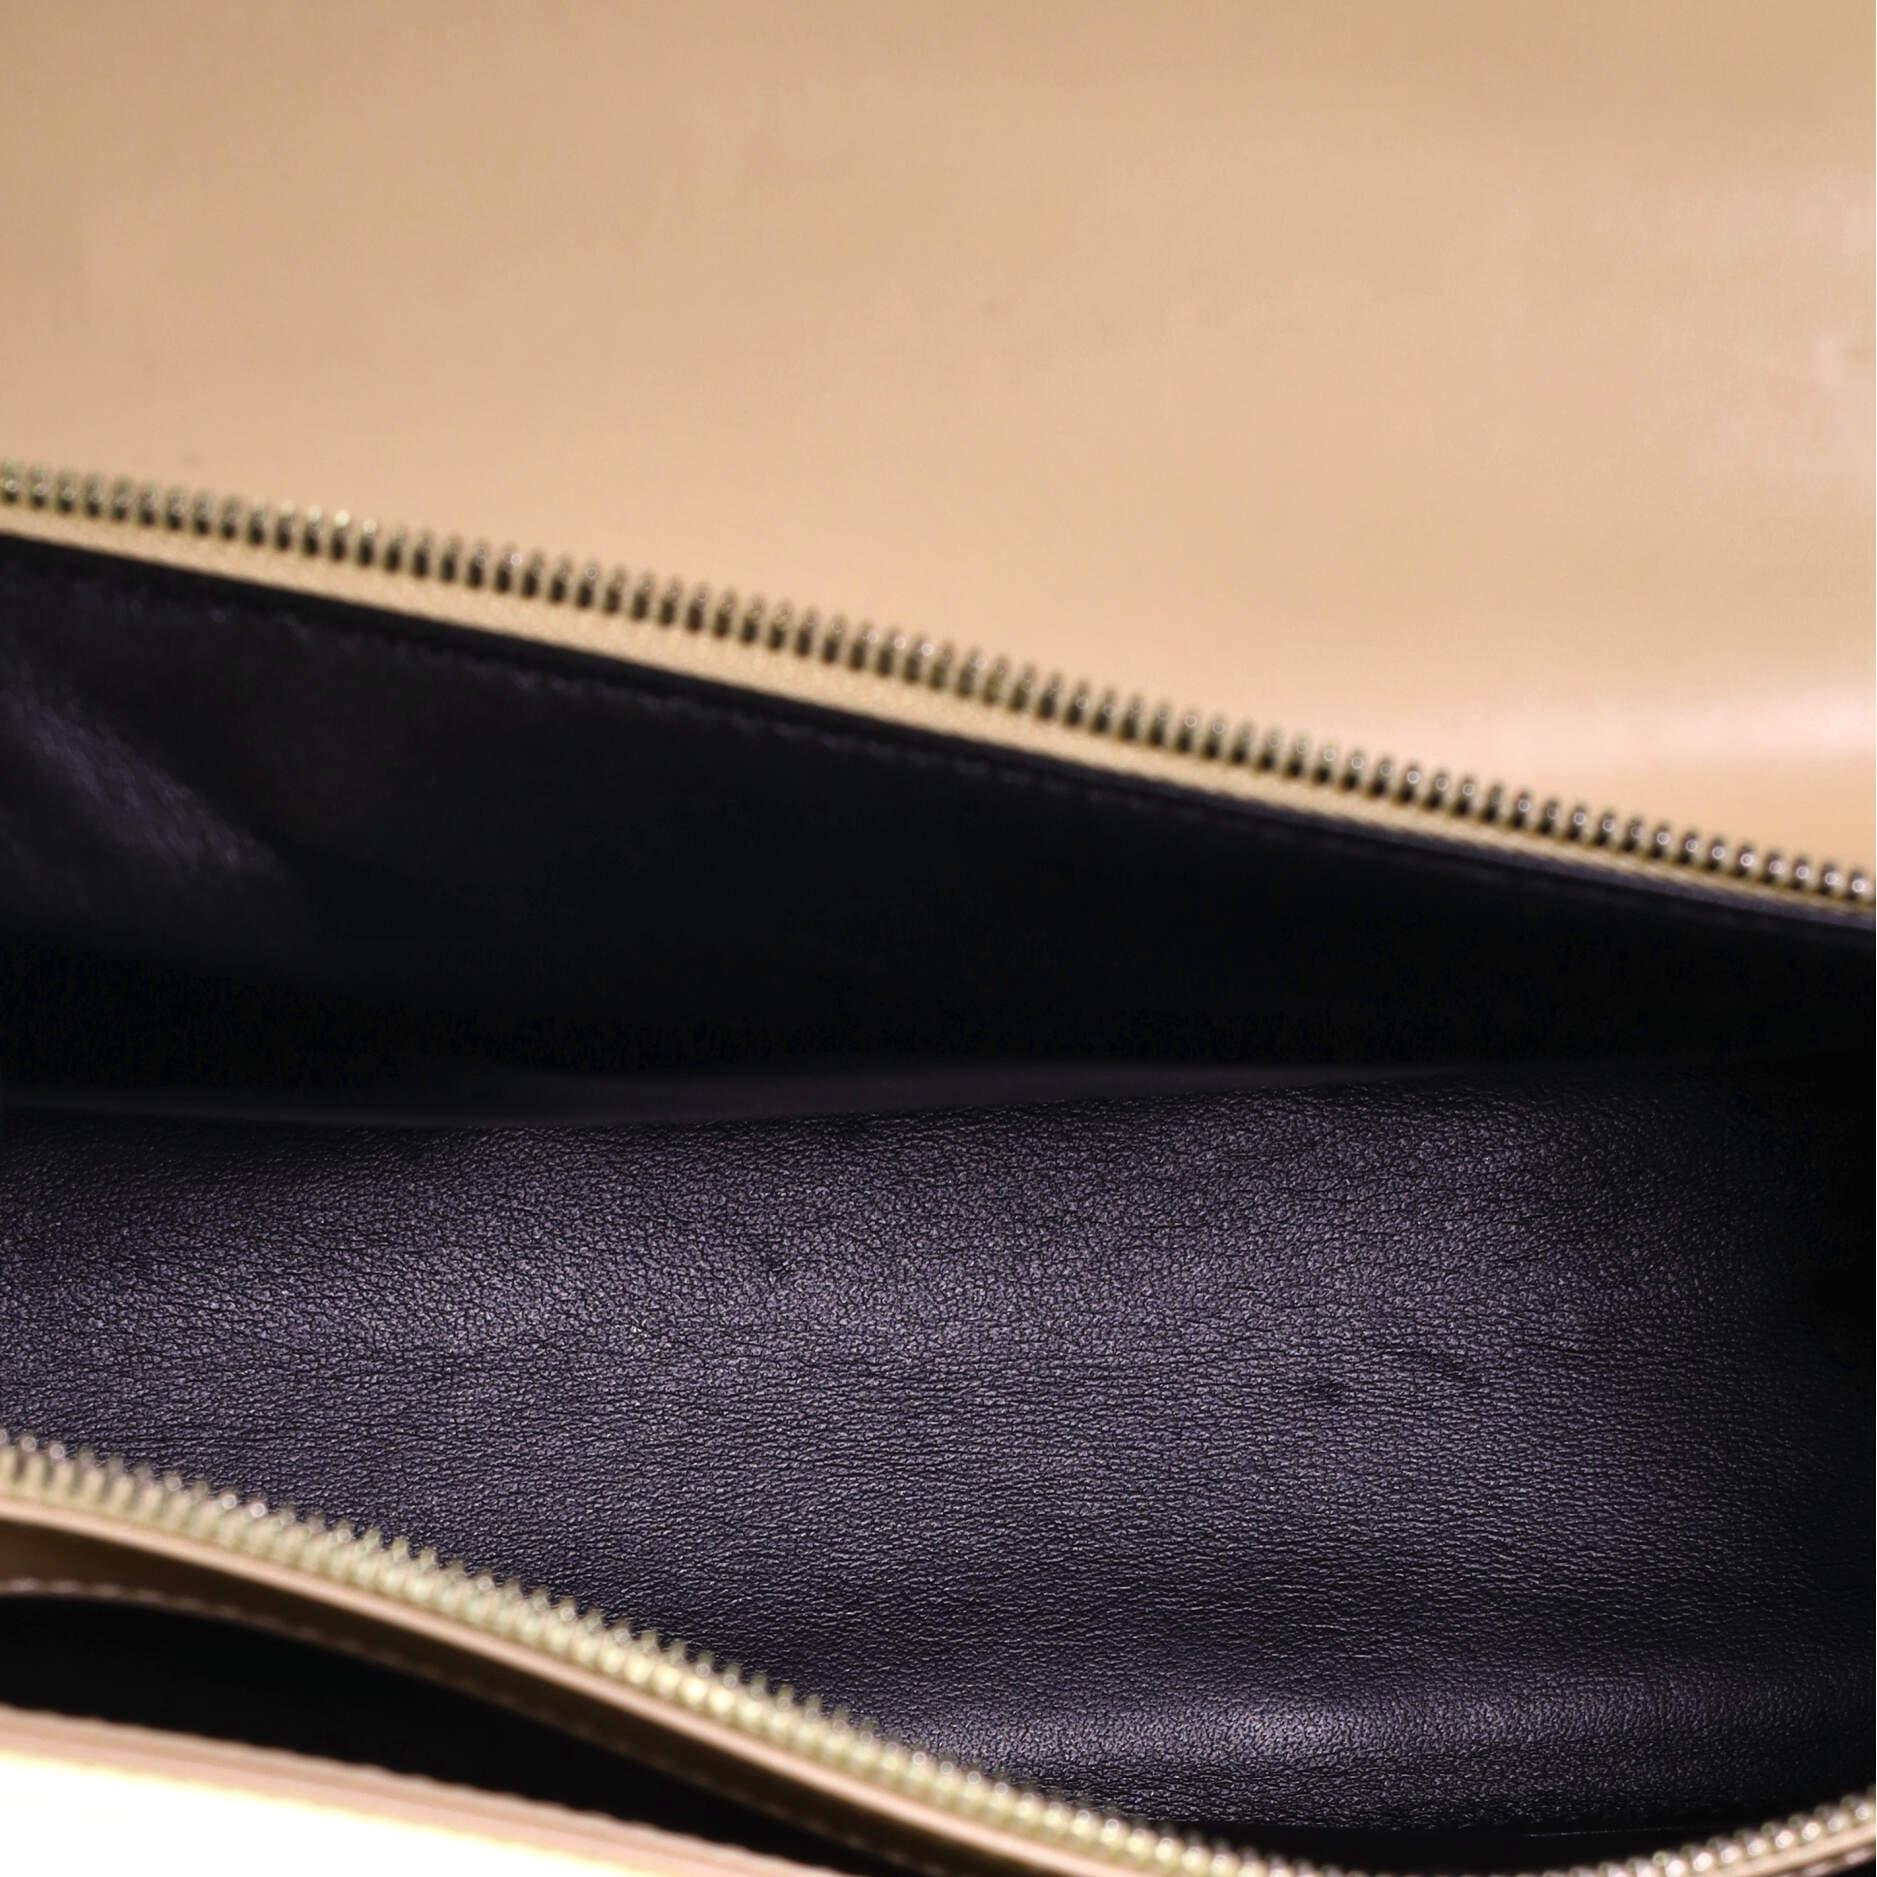  Balenciaga Le Dix Convertible Top Handle Bag Leather 2